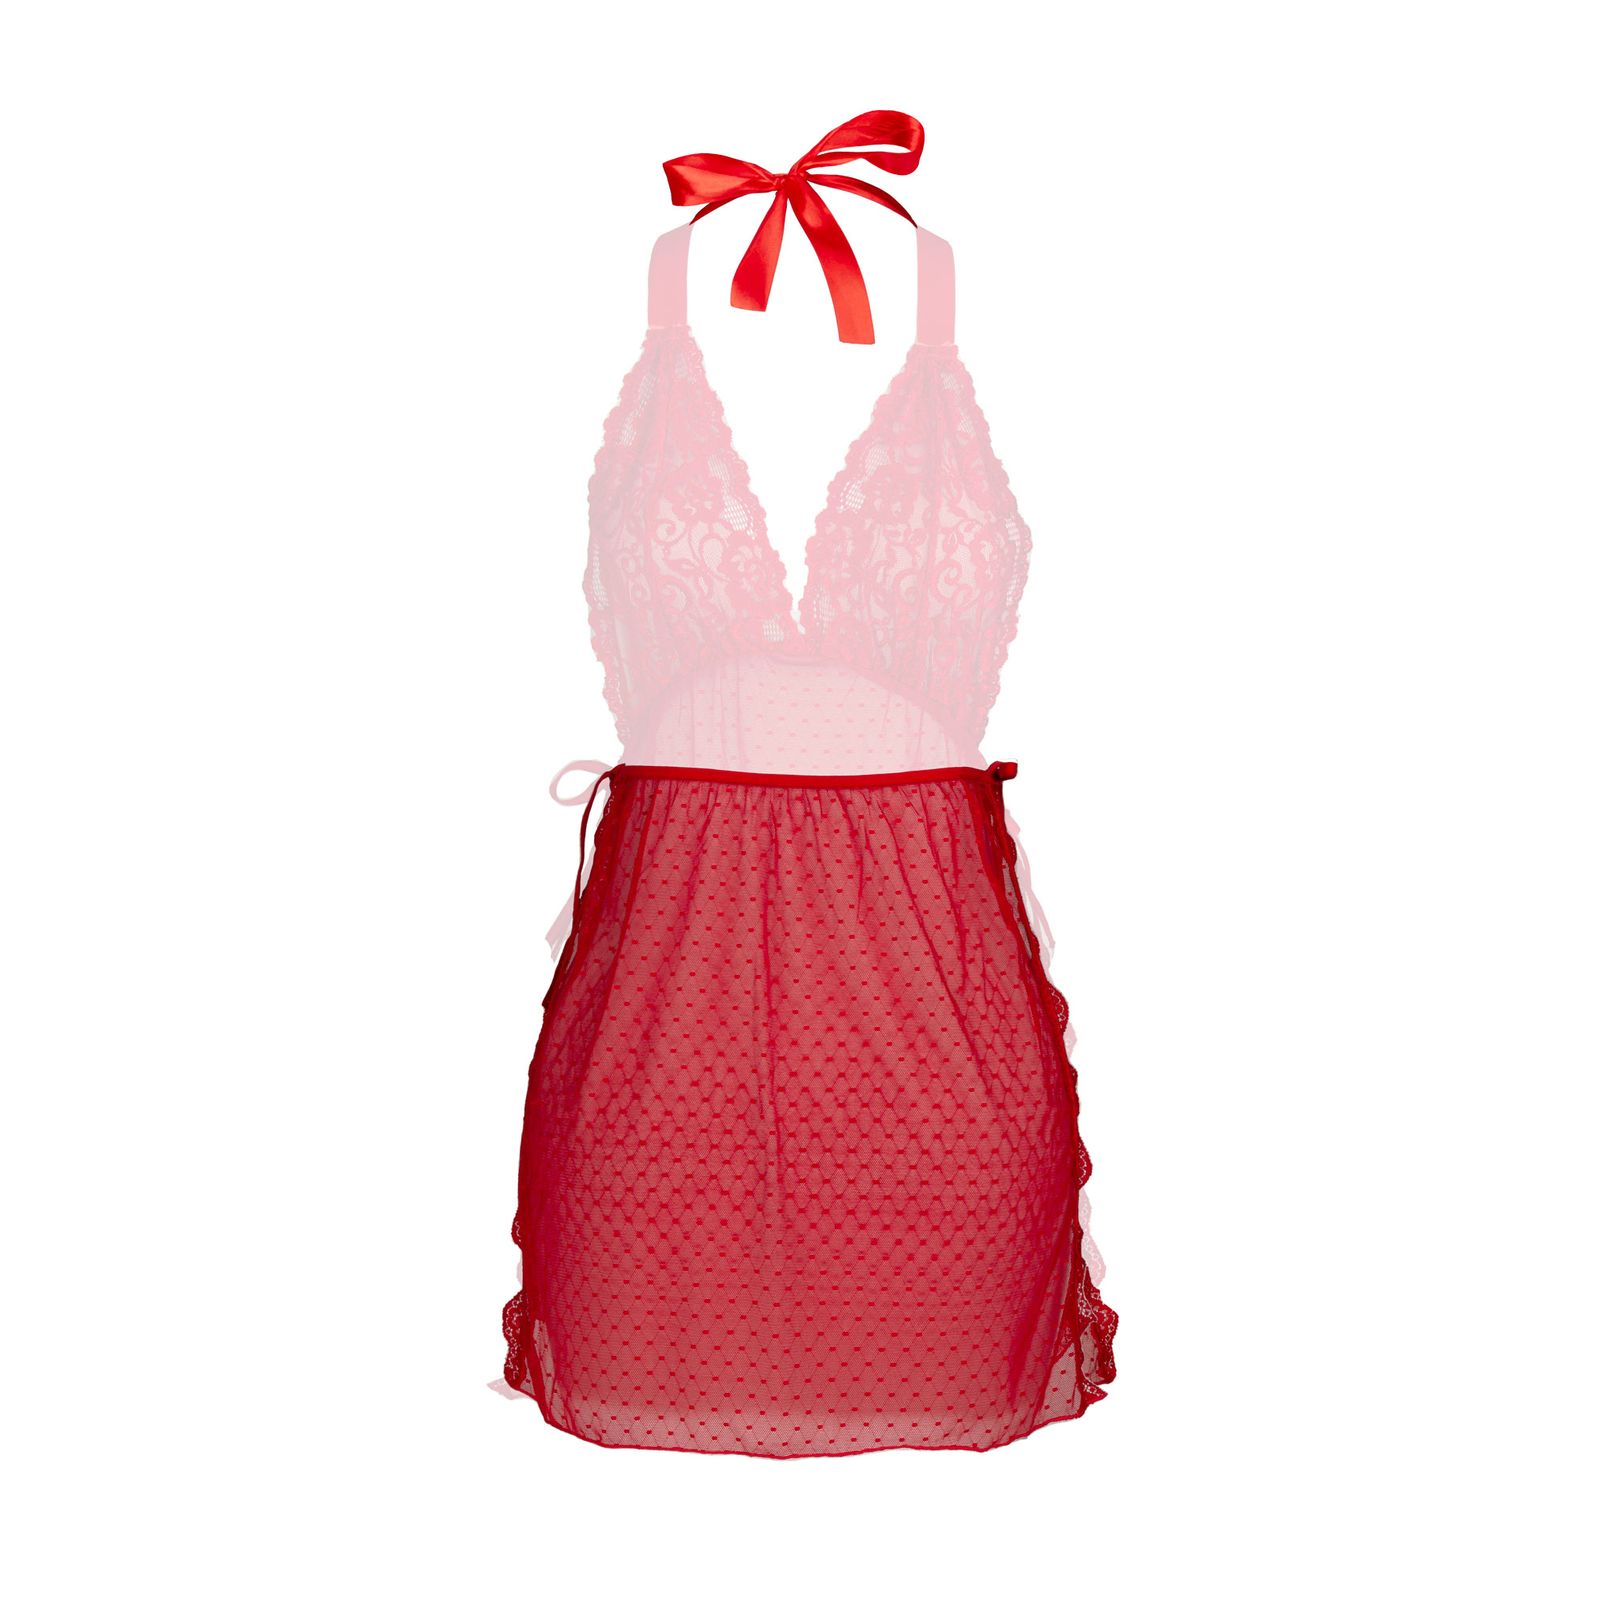 لباس خواب زنانه شباهنگ مدل Waiter رنگ قرمز -  - 2